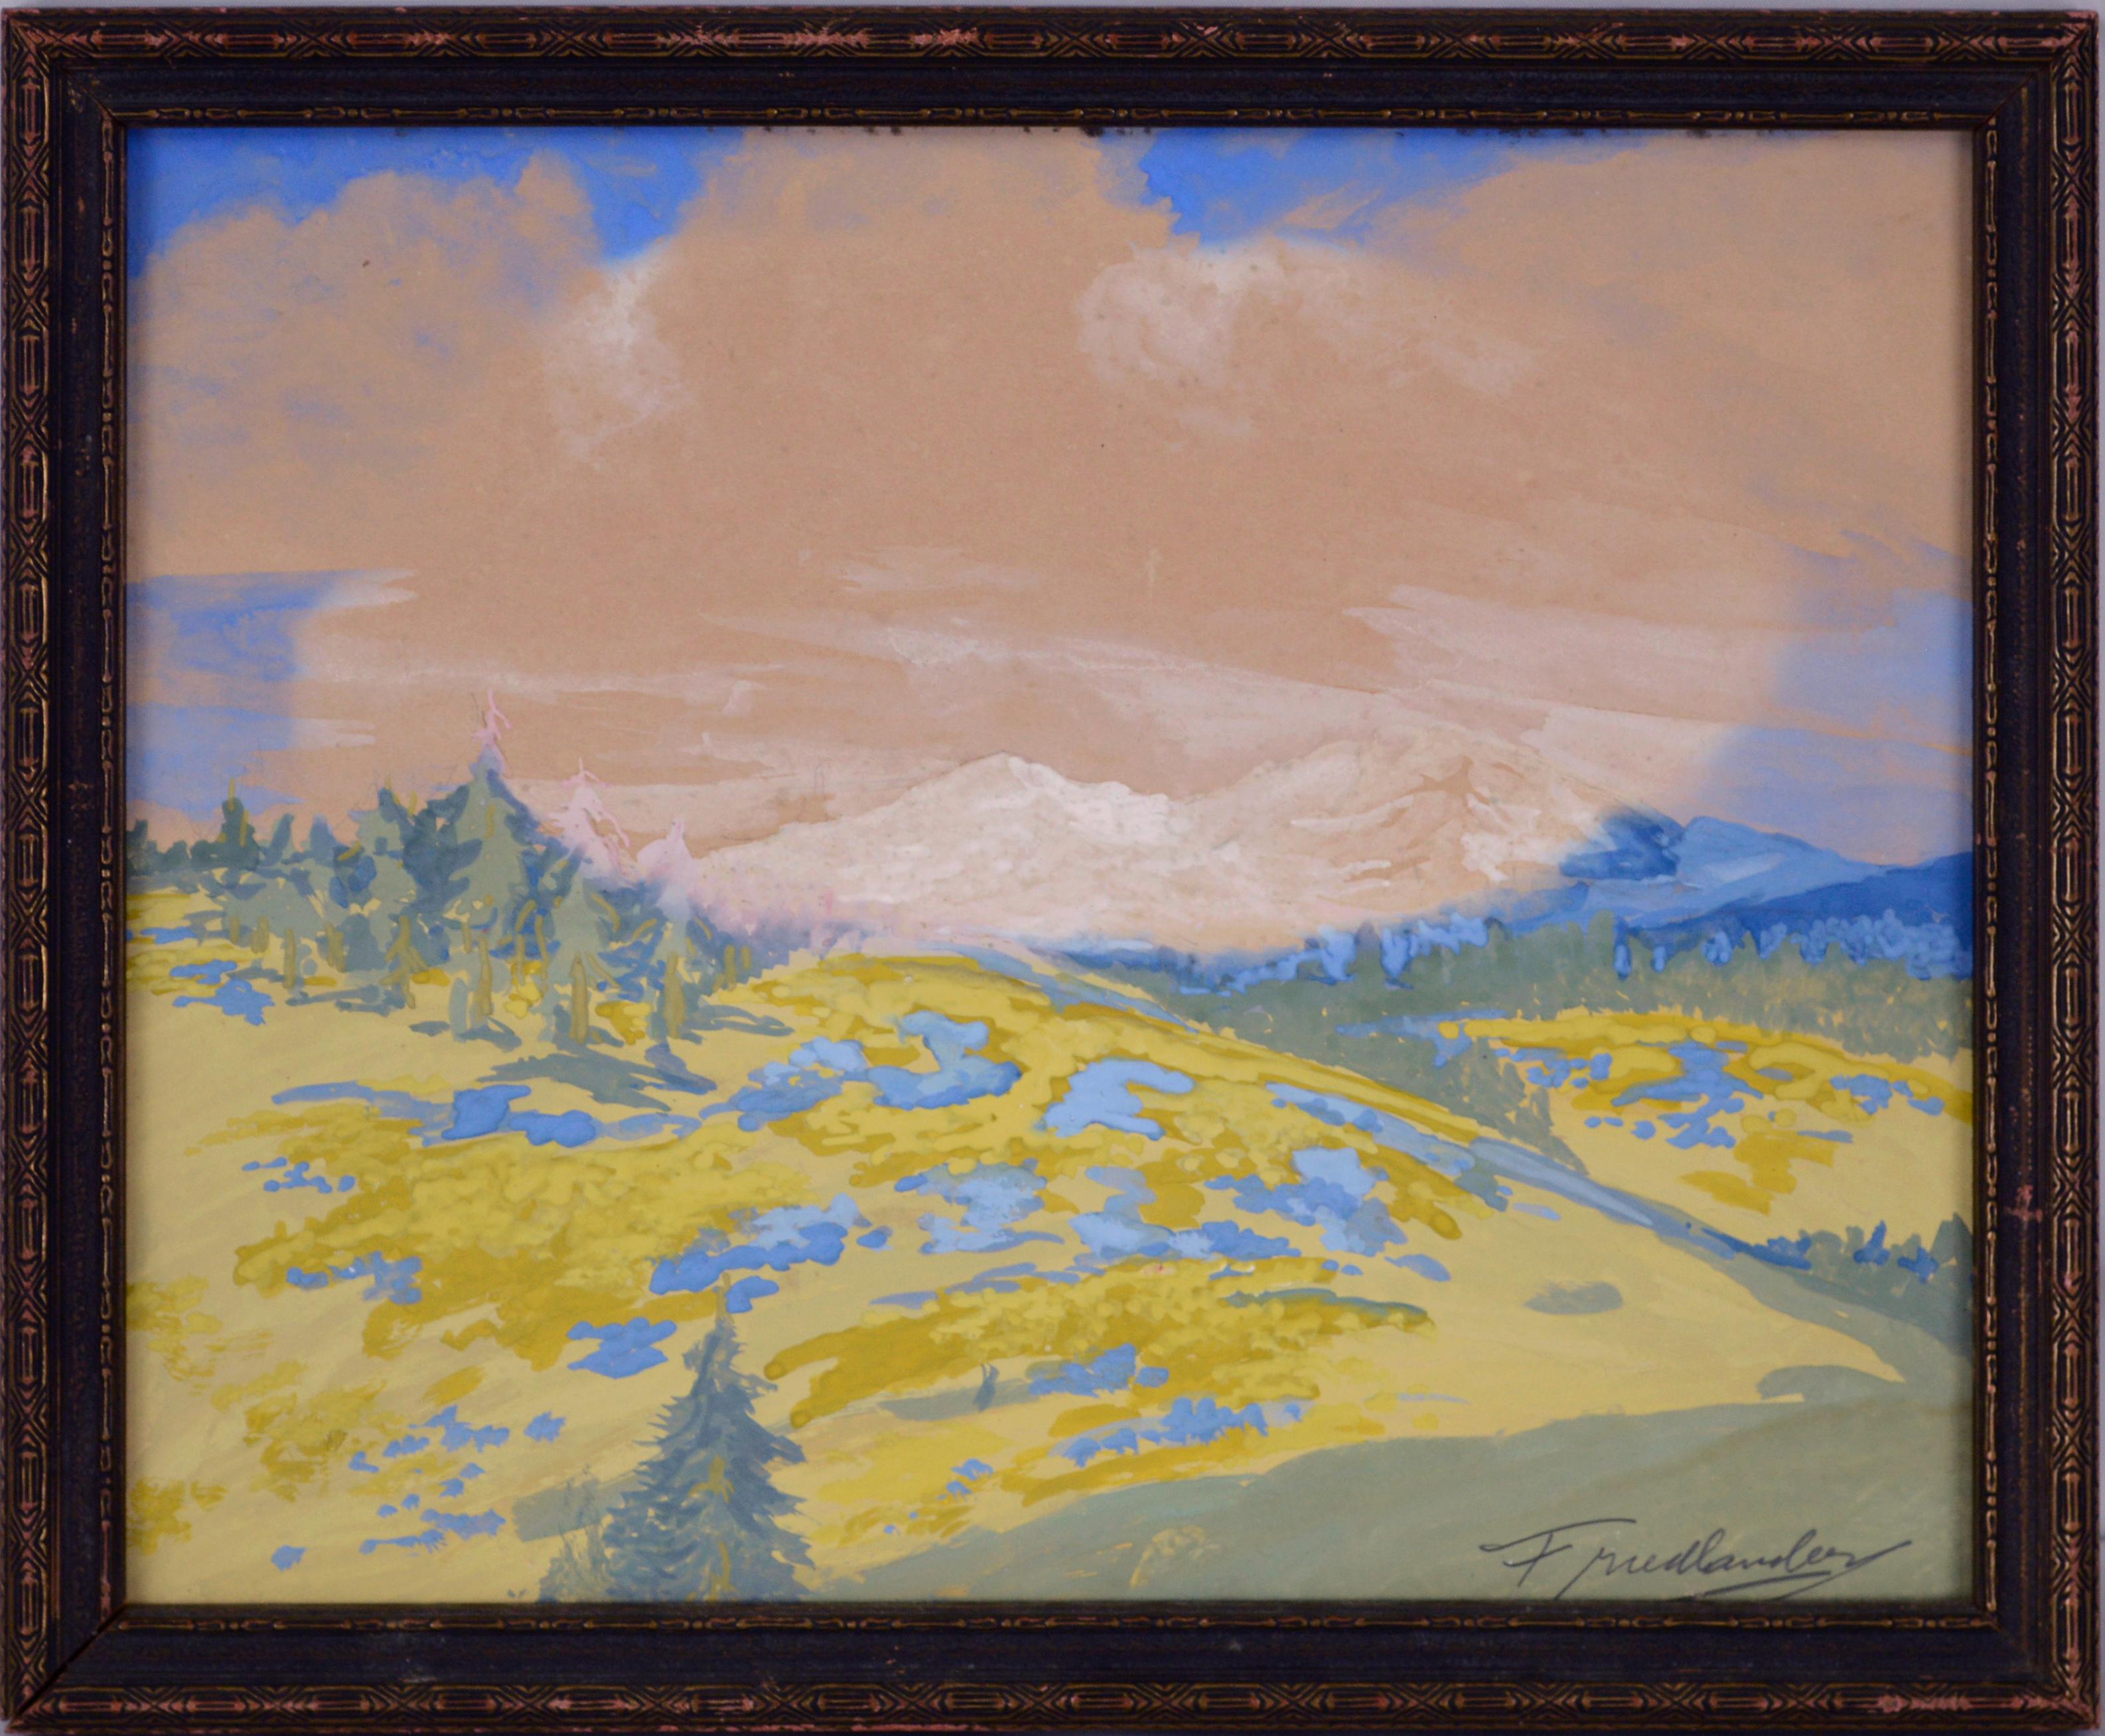 Frühling in den Bergen von Friedlander 1920er Jahre
Ausdrucksstarkes Gouache-Gemälde, das möglicherweise die Schweizer Alpen zeigt, von Friedlander
Auf Papier in einem rustikalen Rahmen der Zeit. 
Bild, 9,75 "Hx 12 "W
Rahmen 11 "H x 13.25 "W